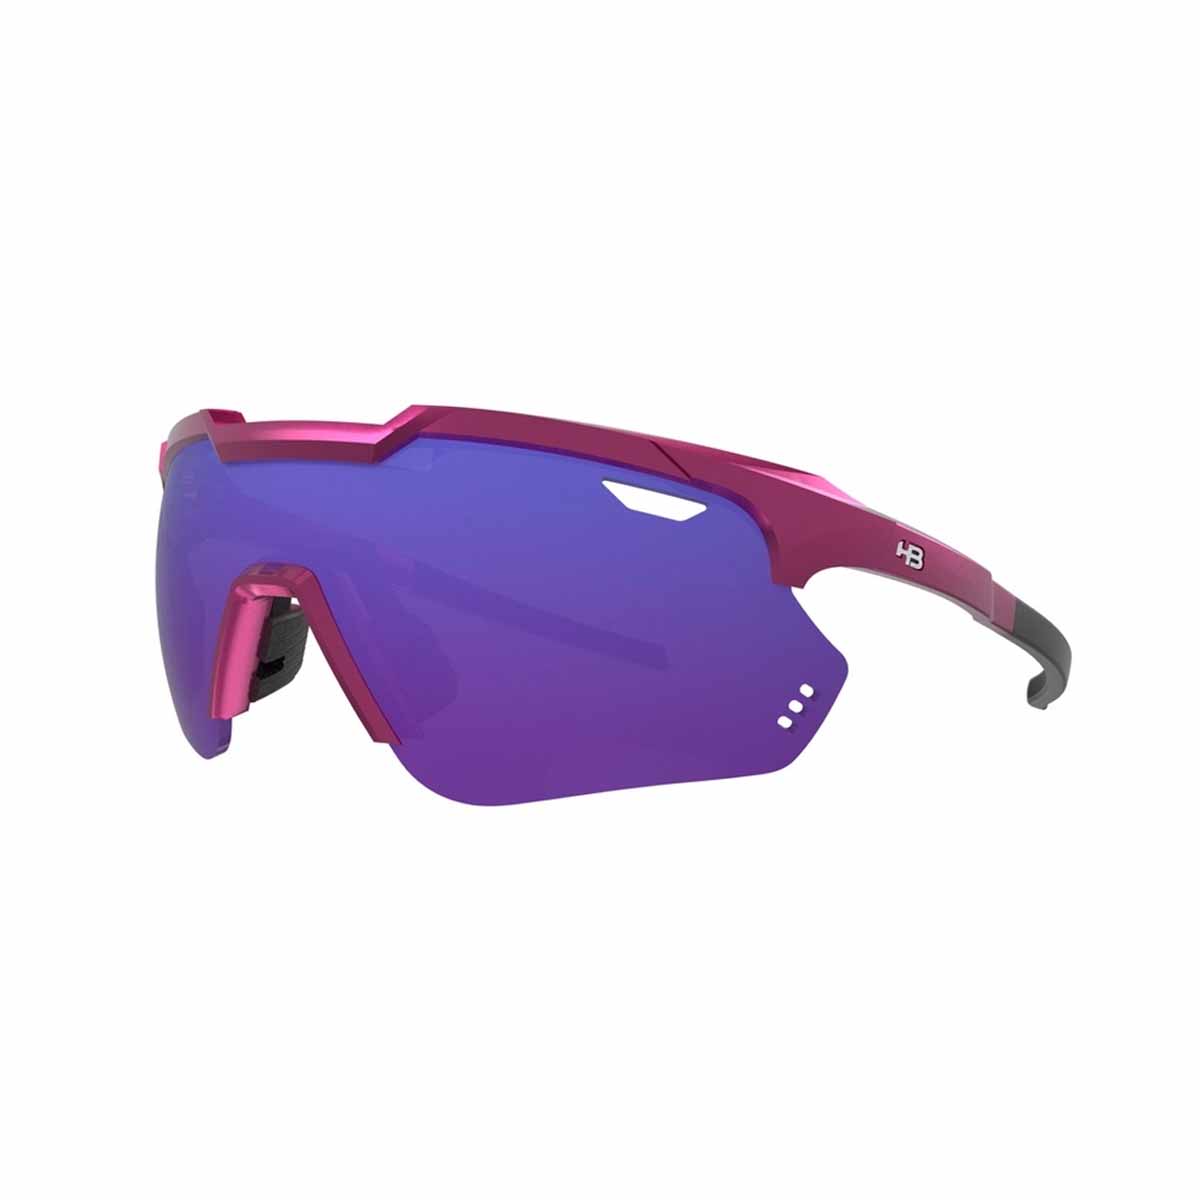 Oculos Para Ciclismo HB Shield Compact 2.0 Rosa Metalico Fosco Lente Azul Chrome Espelhada